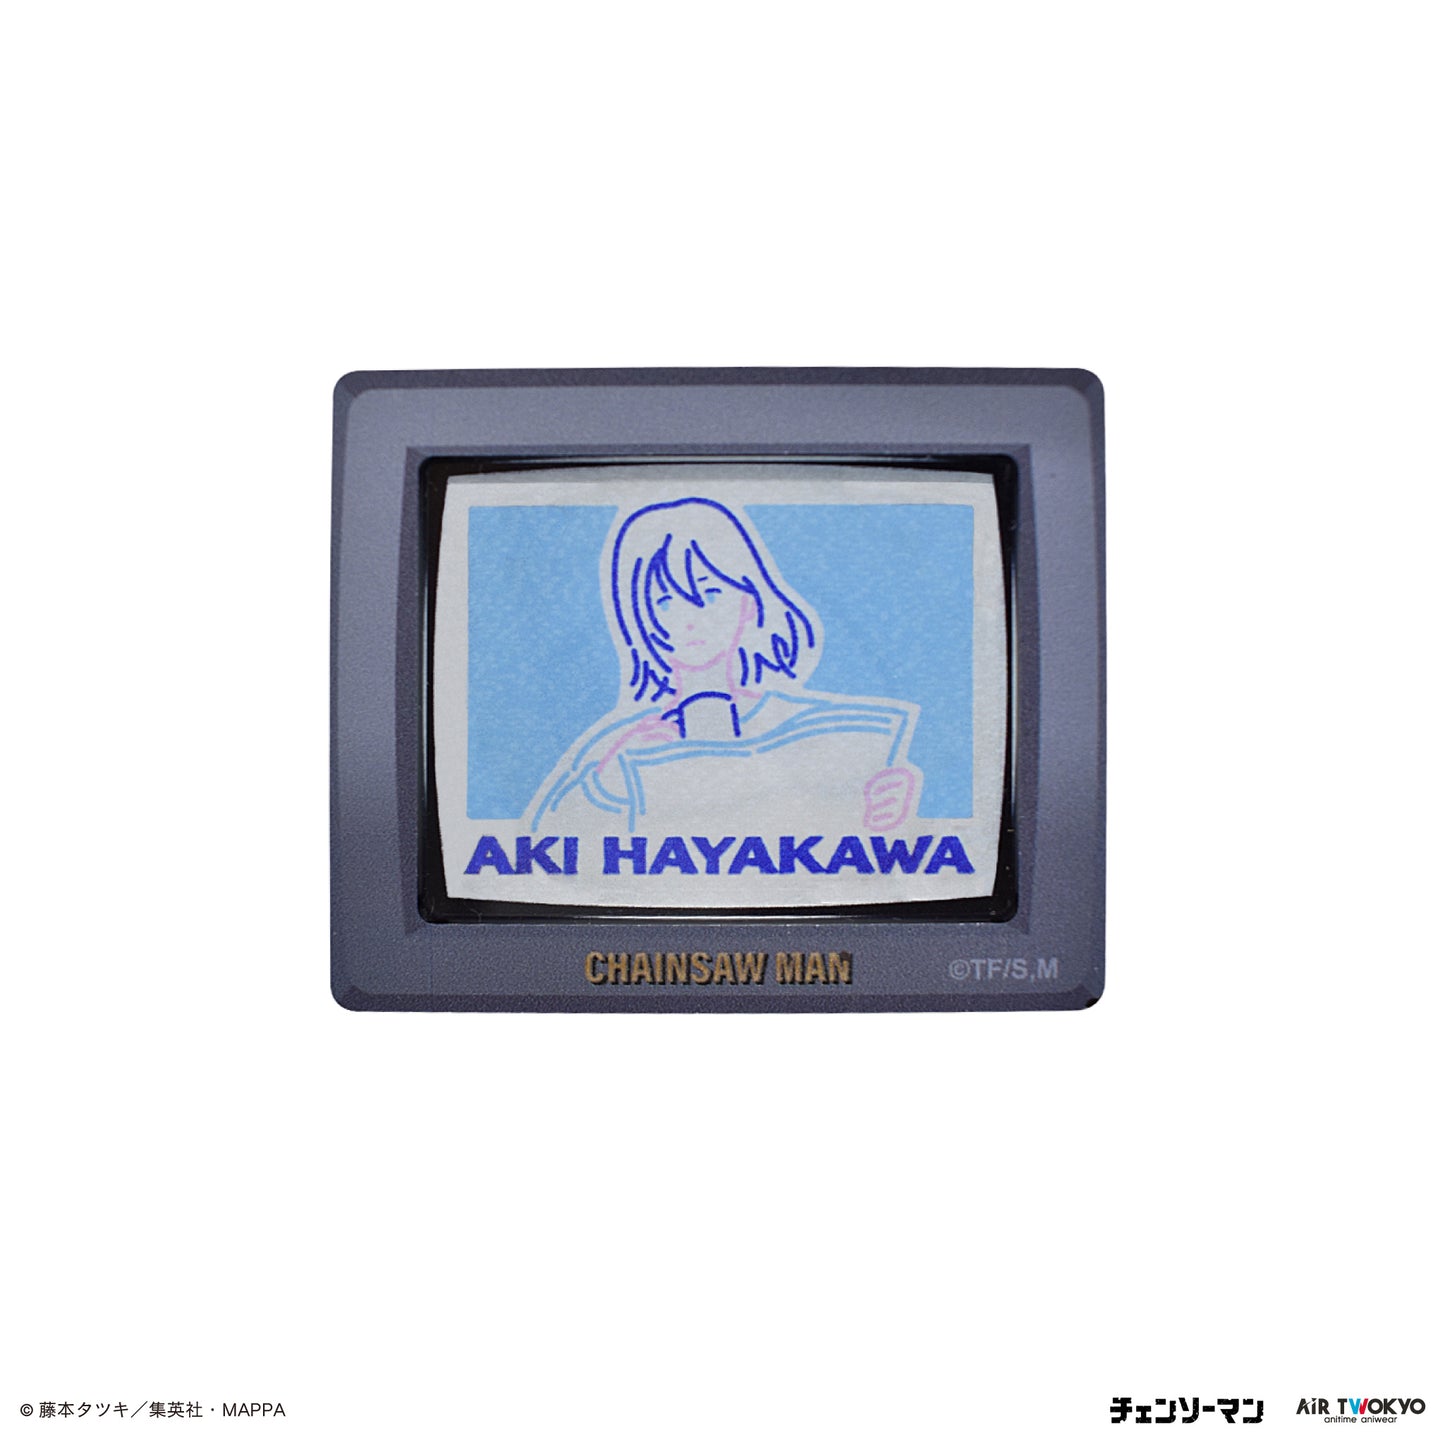 TVアニメ『チェンソーマン』シーンイラストブラウン管テレビ型マグネット